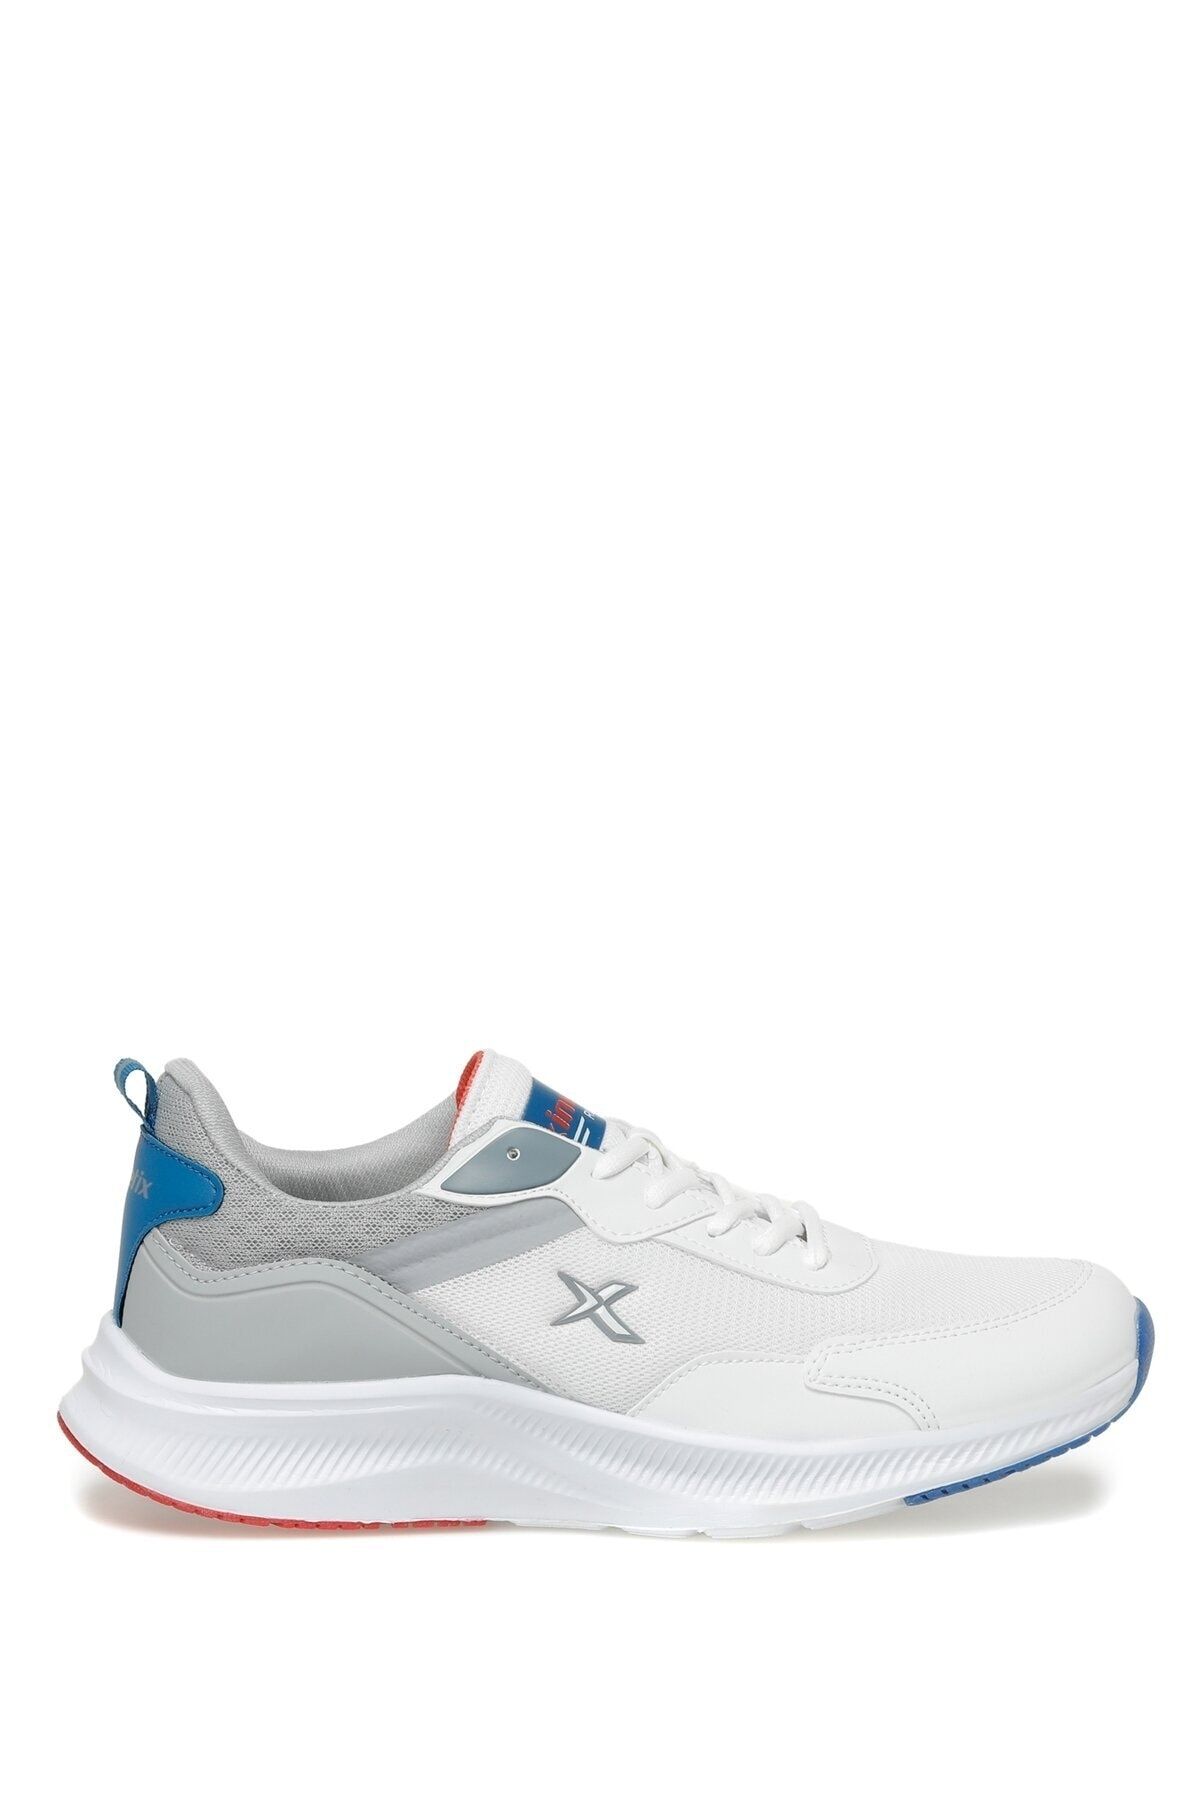 Kinetix Gesto Tx 3fx Beyaz Erkek Koşu Ayakkabısı